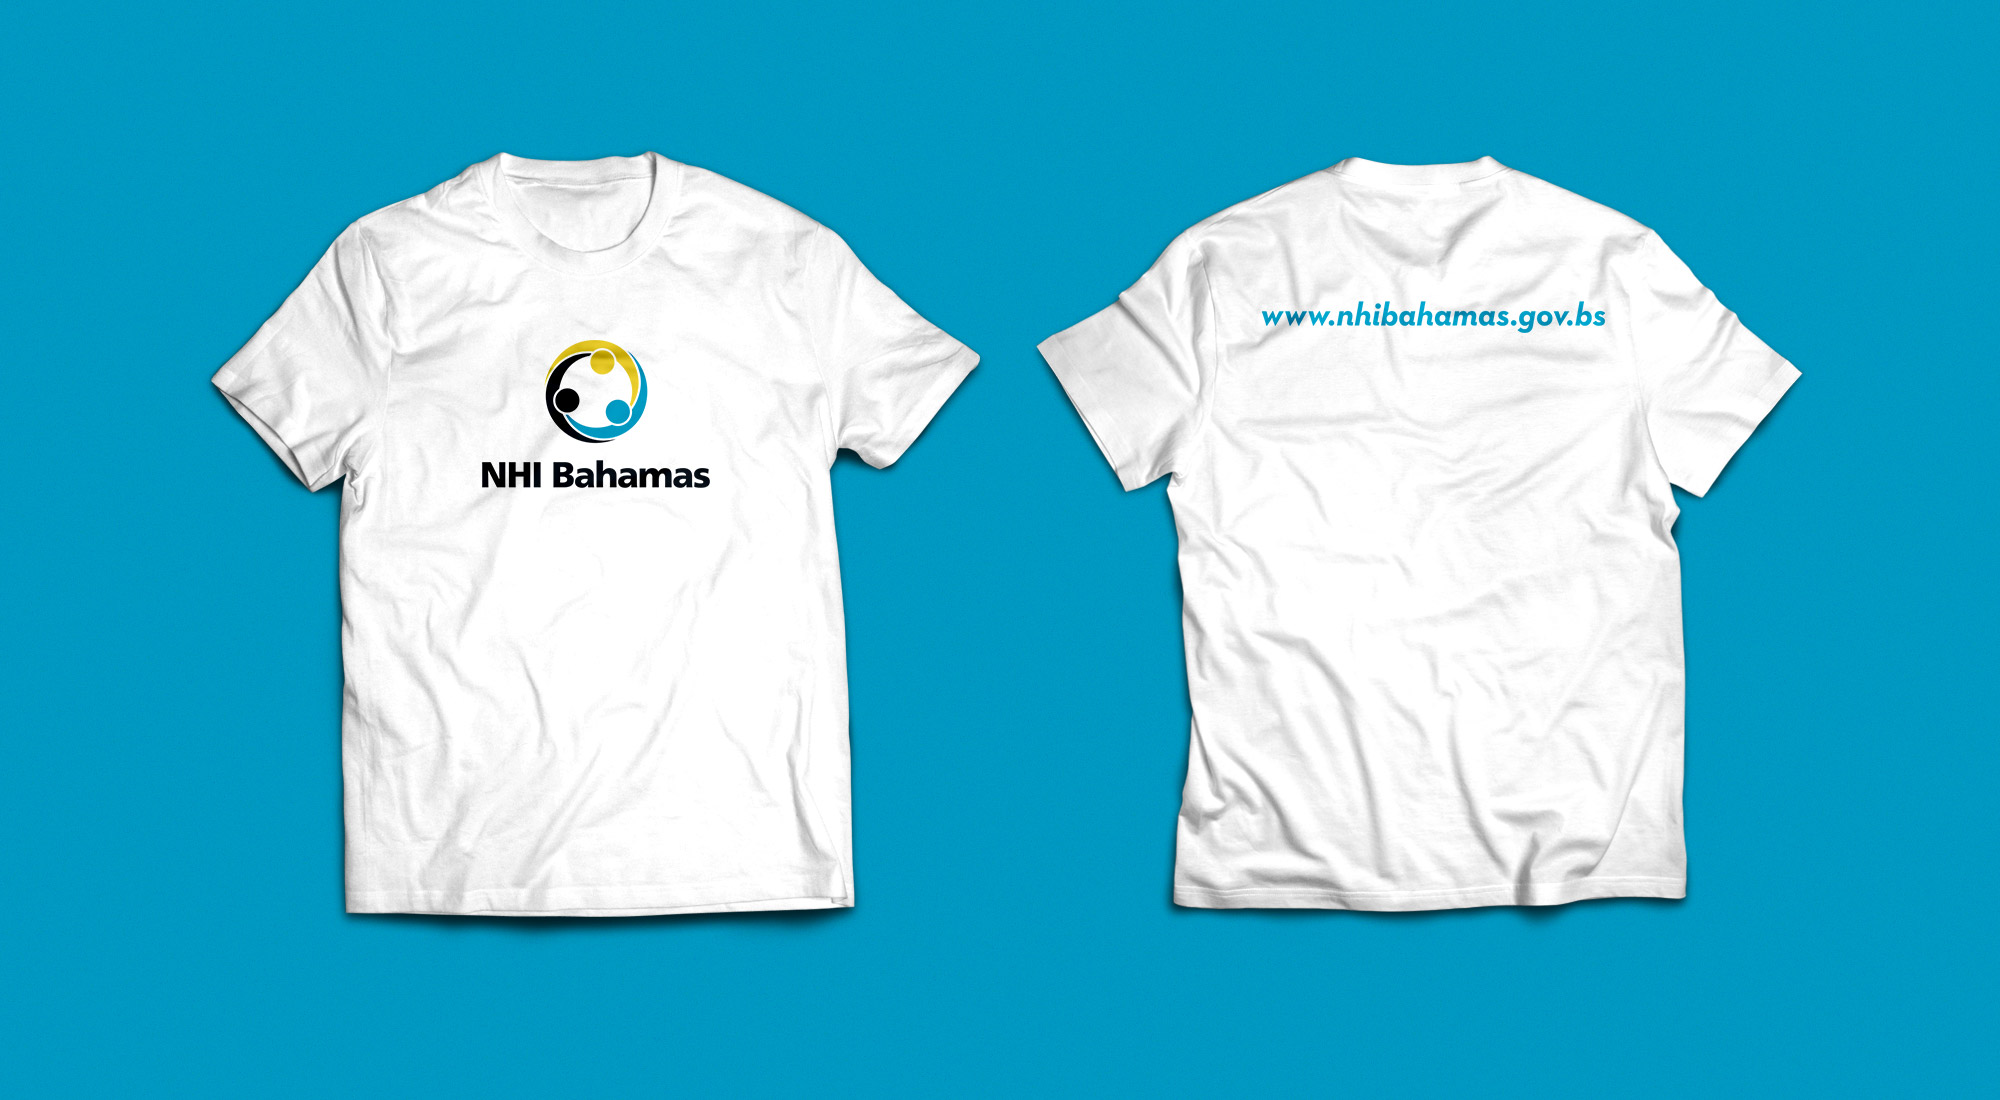 NHI Bahamas Logo on White T-Shirts